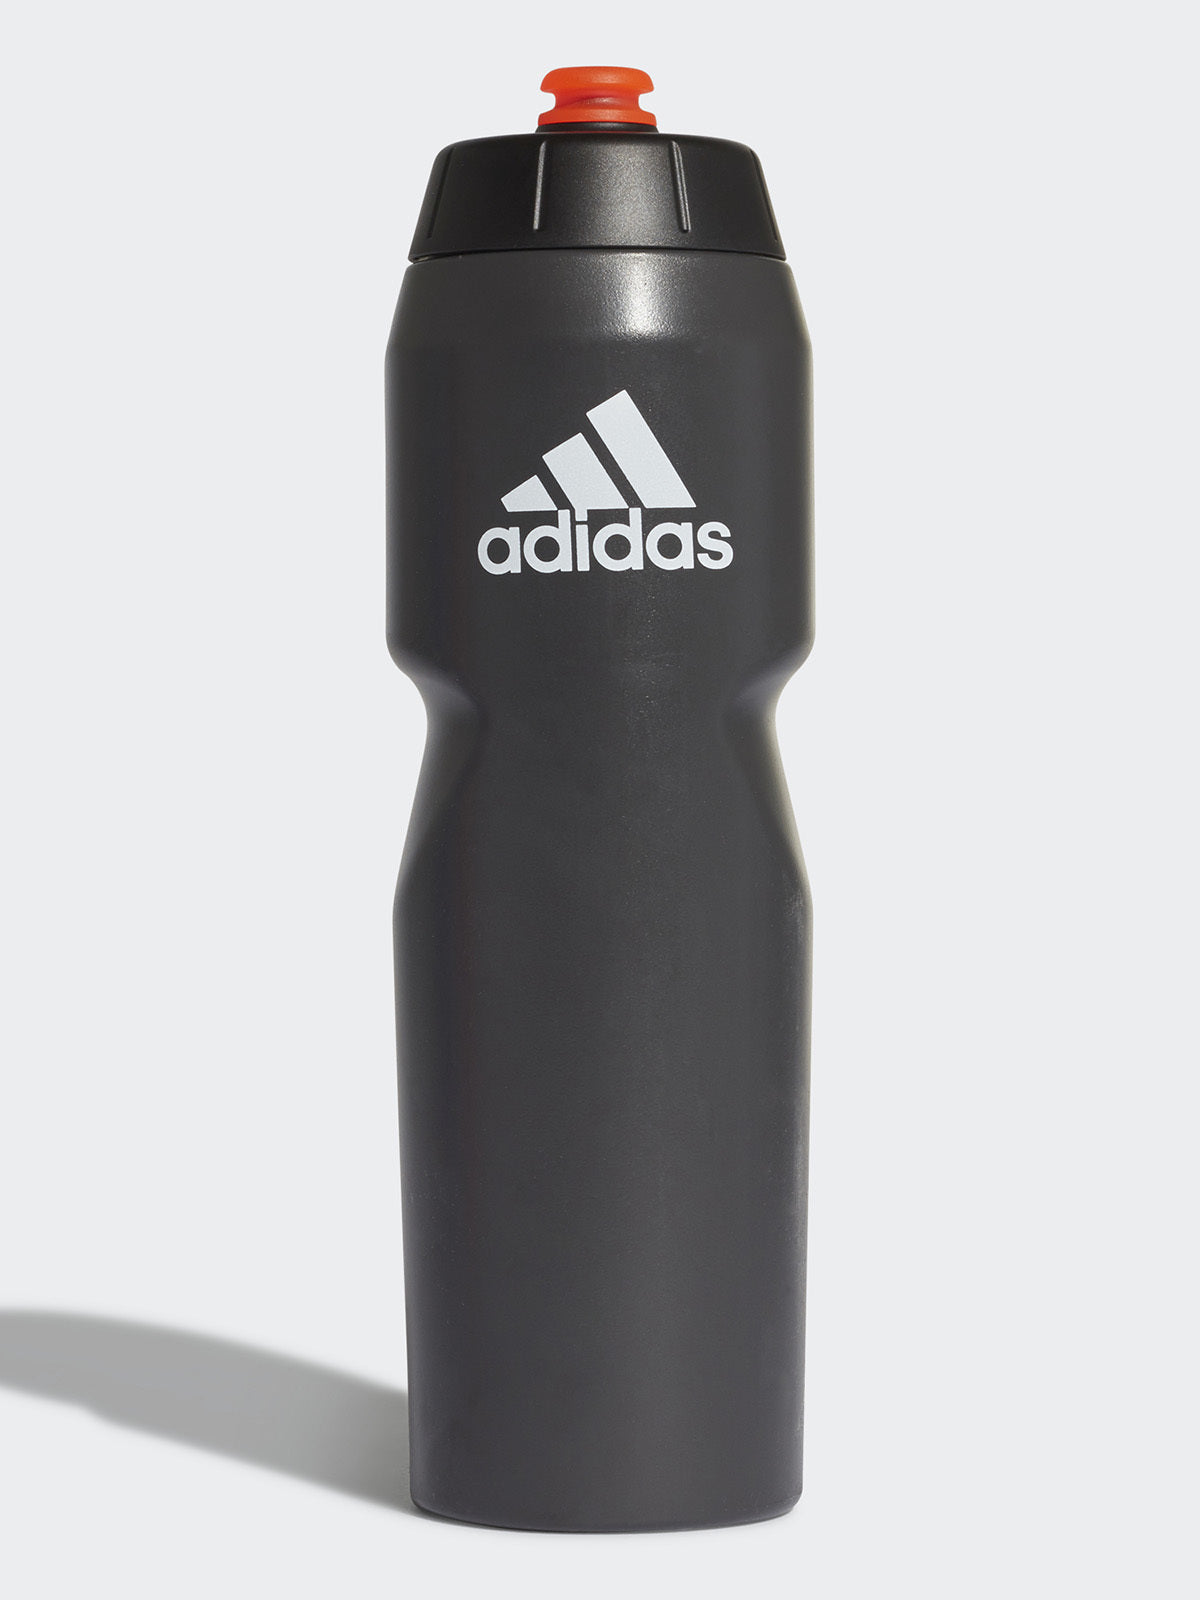 בקבוק ספורט לחיץ עם הדפס לוגו- adidas performance|אדידס פרפורמנס